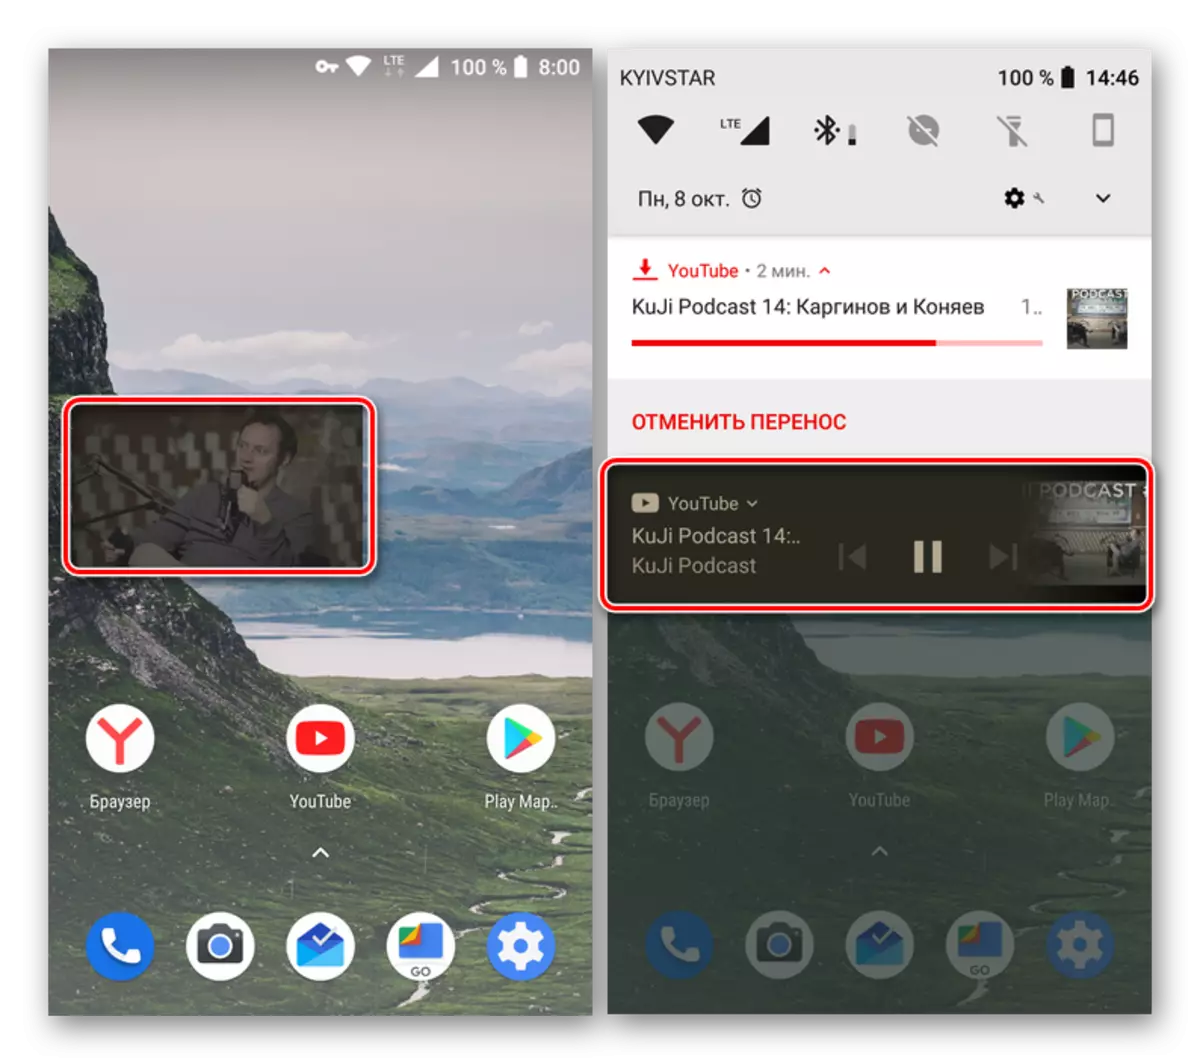 لوڈ، اتارنا Android کے لئے آپ کے یو ٹیوب کی درخواست میں آڈیو اور ویڈیو کی پس منظر پلے بیک